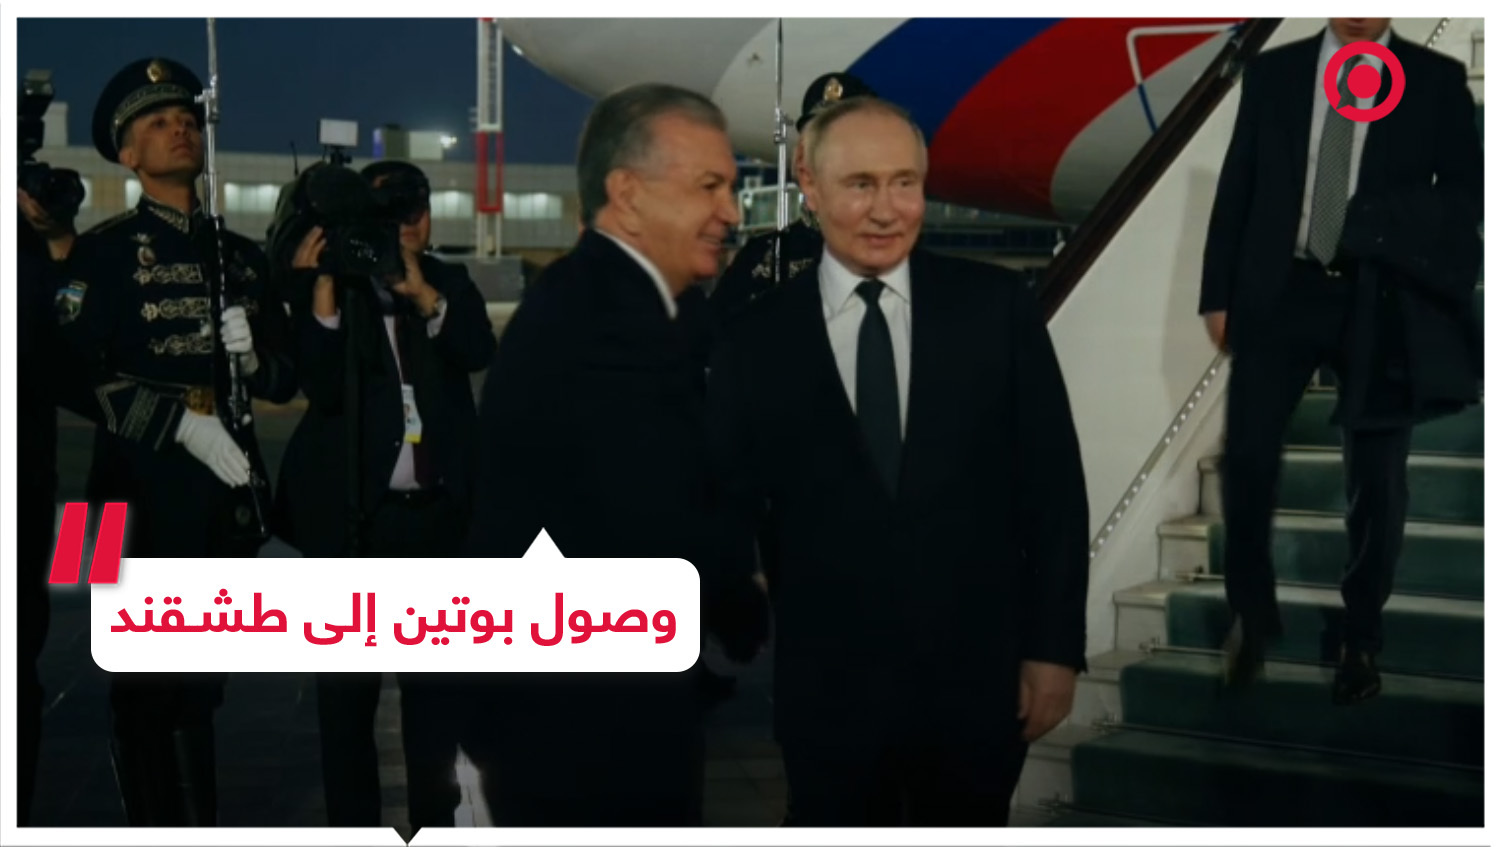 وصول الرئيس الروسي إلى طشقند في زيارة رسمية